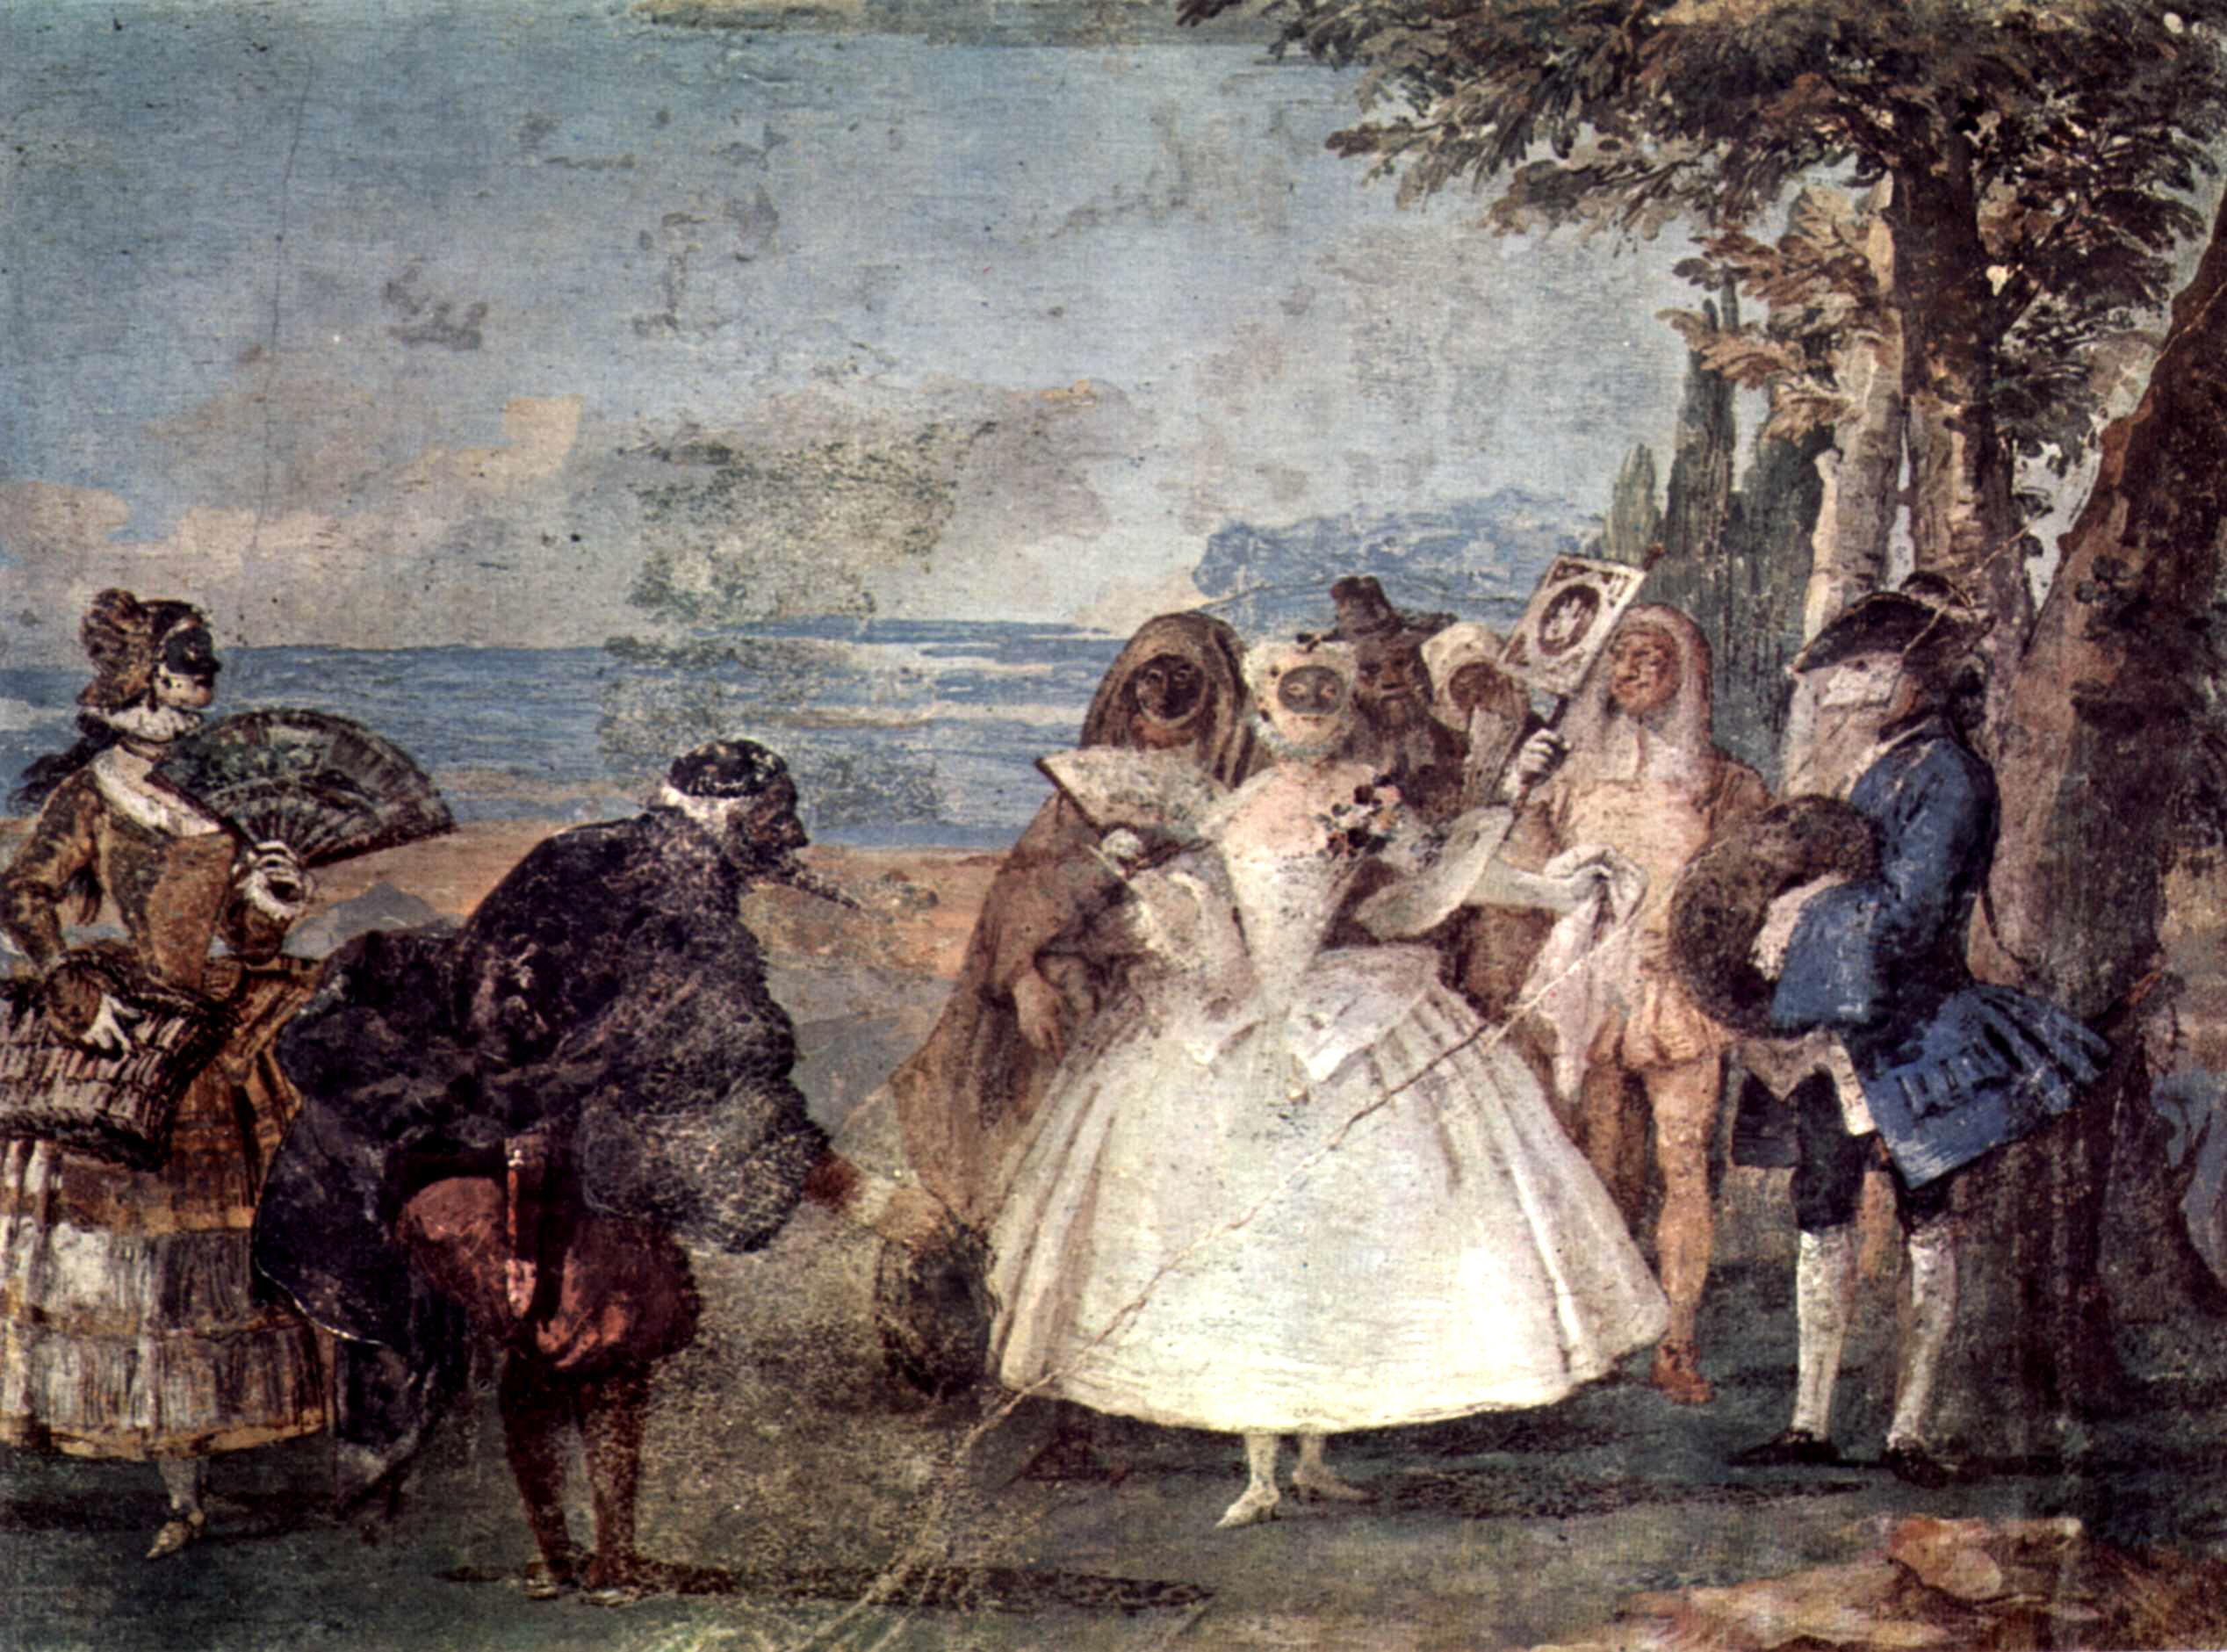 Giovanni Domenico Tiepolo - August 30, 1727 - March 3, 1804